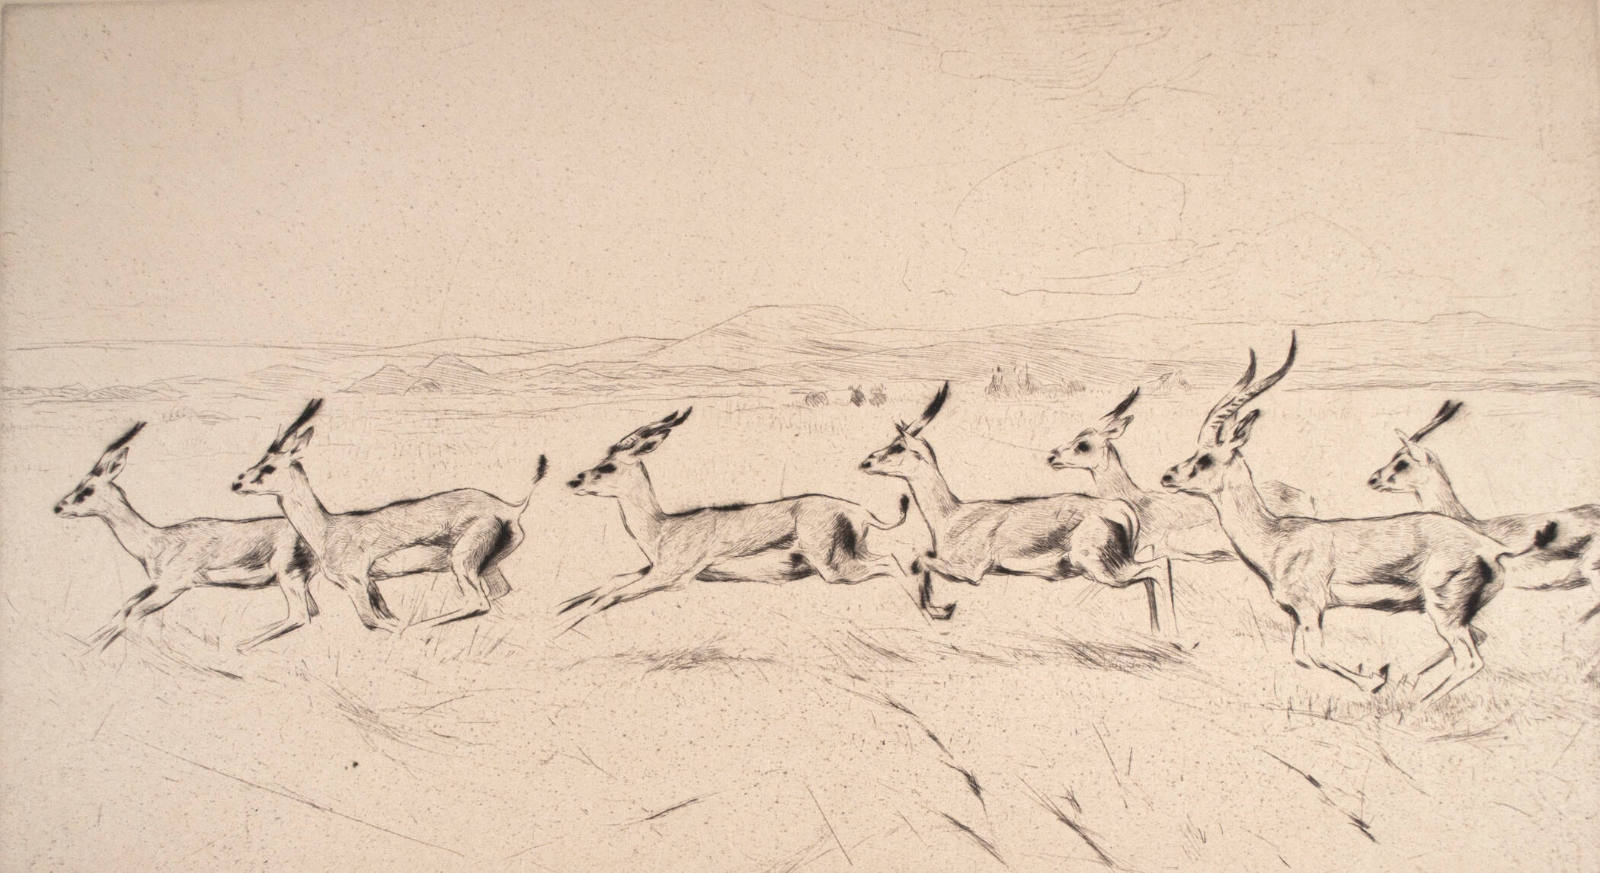 Antelopes (Grantsgazelleu)